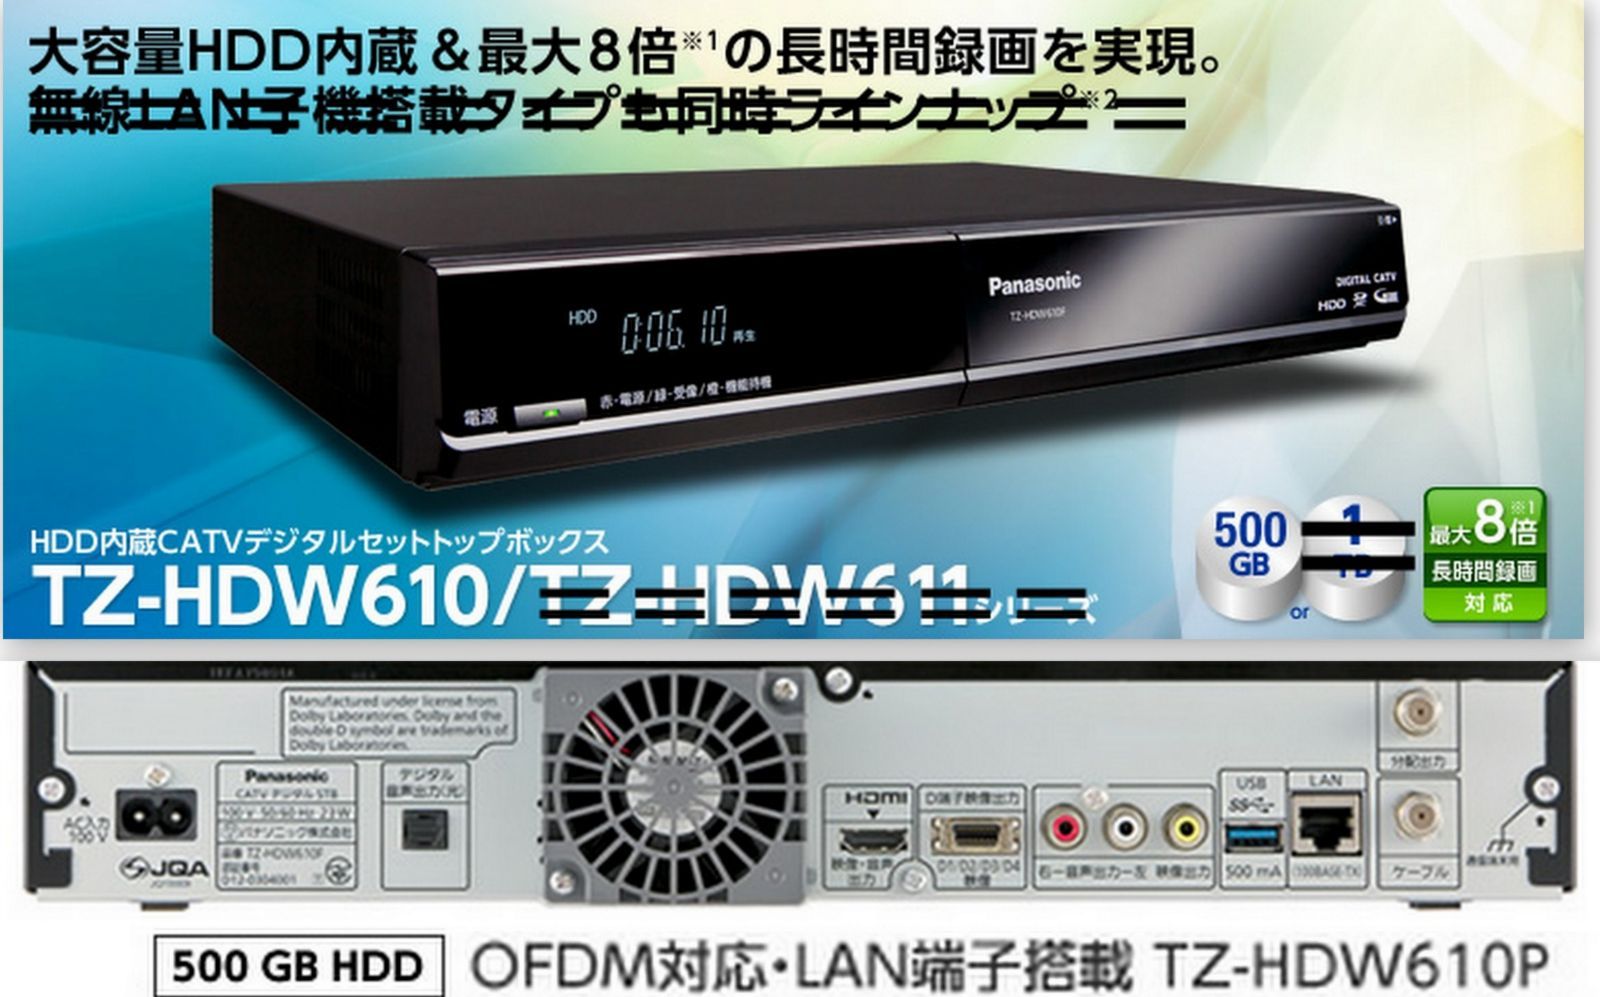 パナソニック CATVデジタルセットトップボックス TZ-HDW611PW - 映像機器